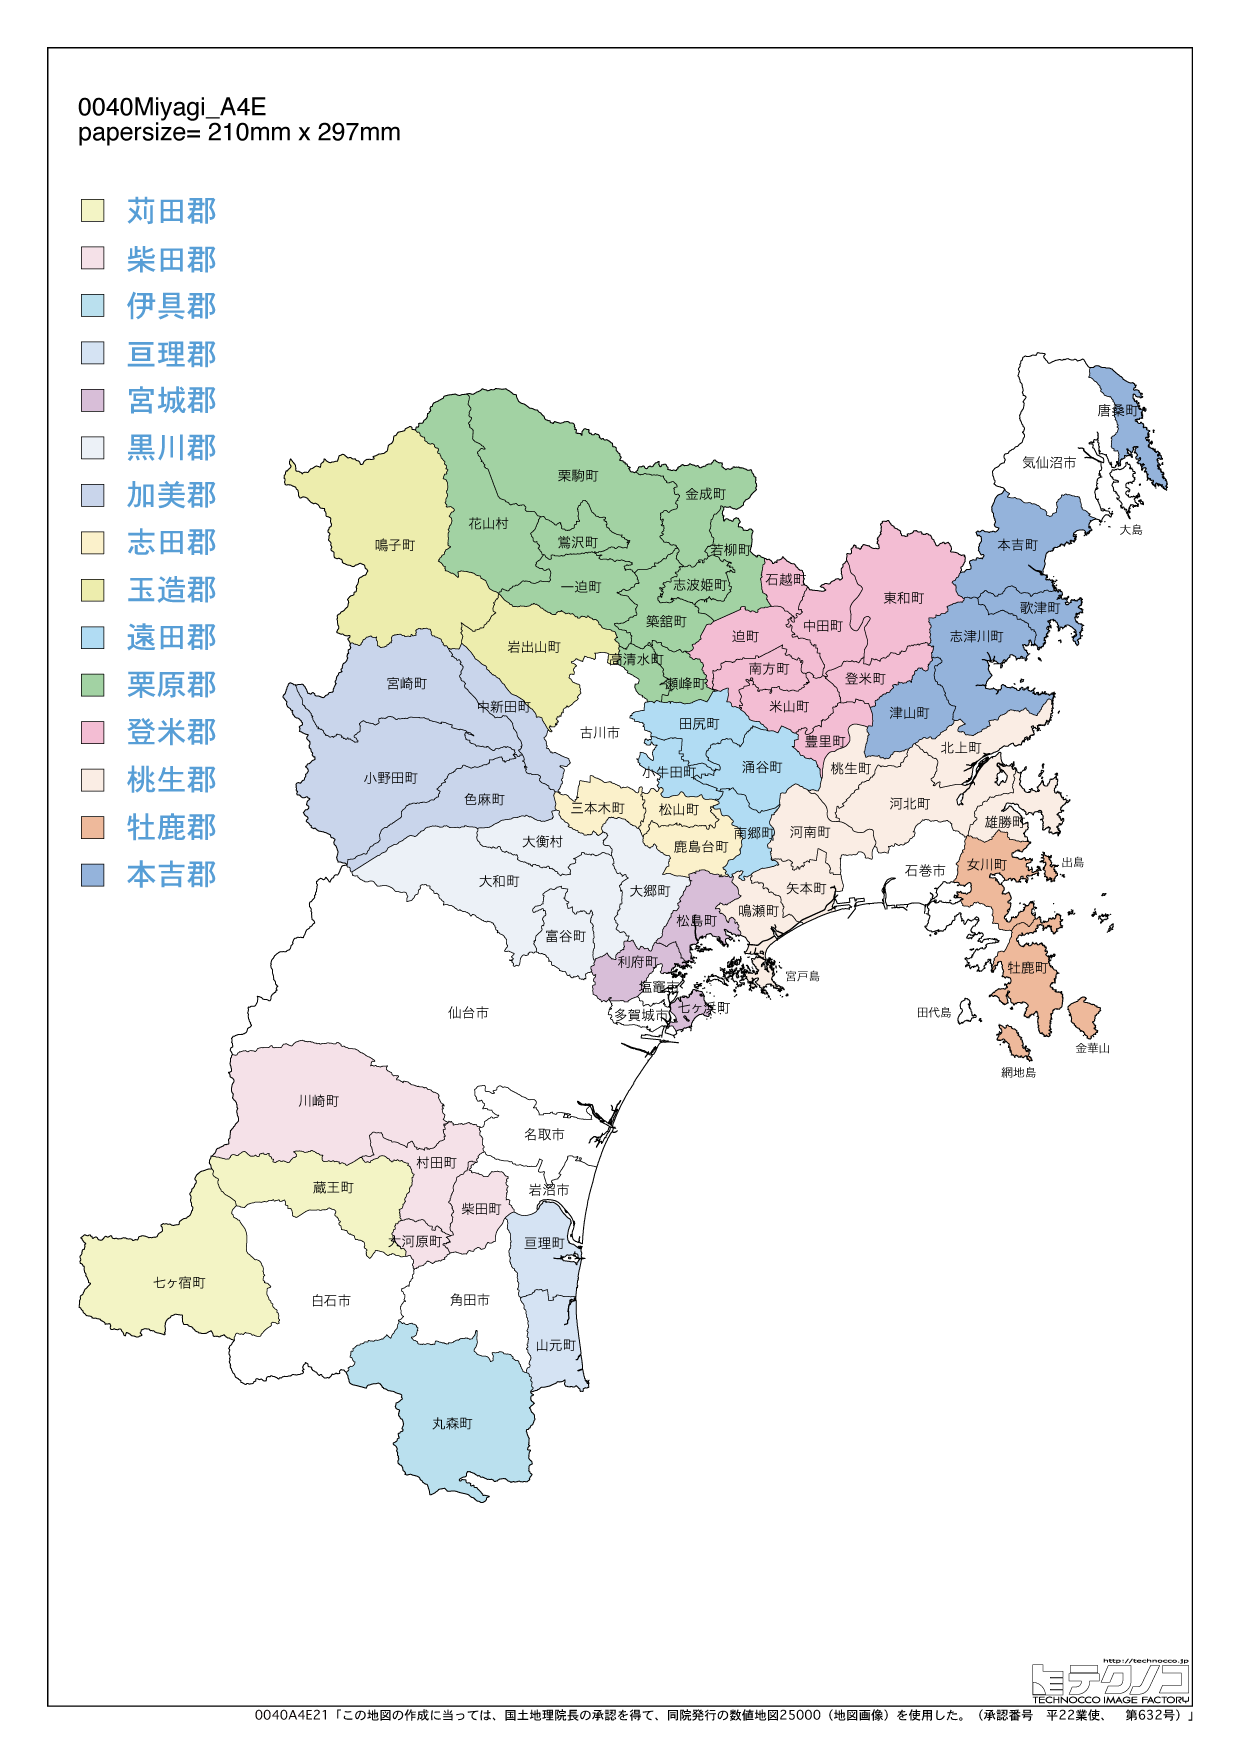 宮城県の白地図と市町村の合併情報